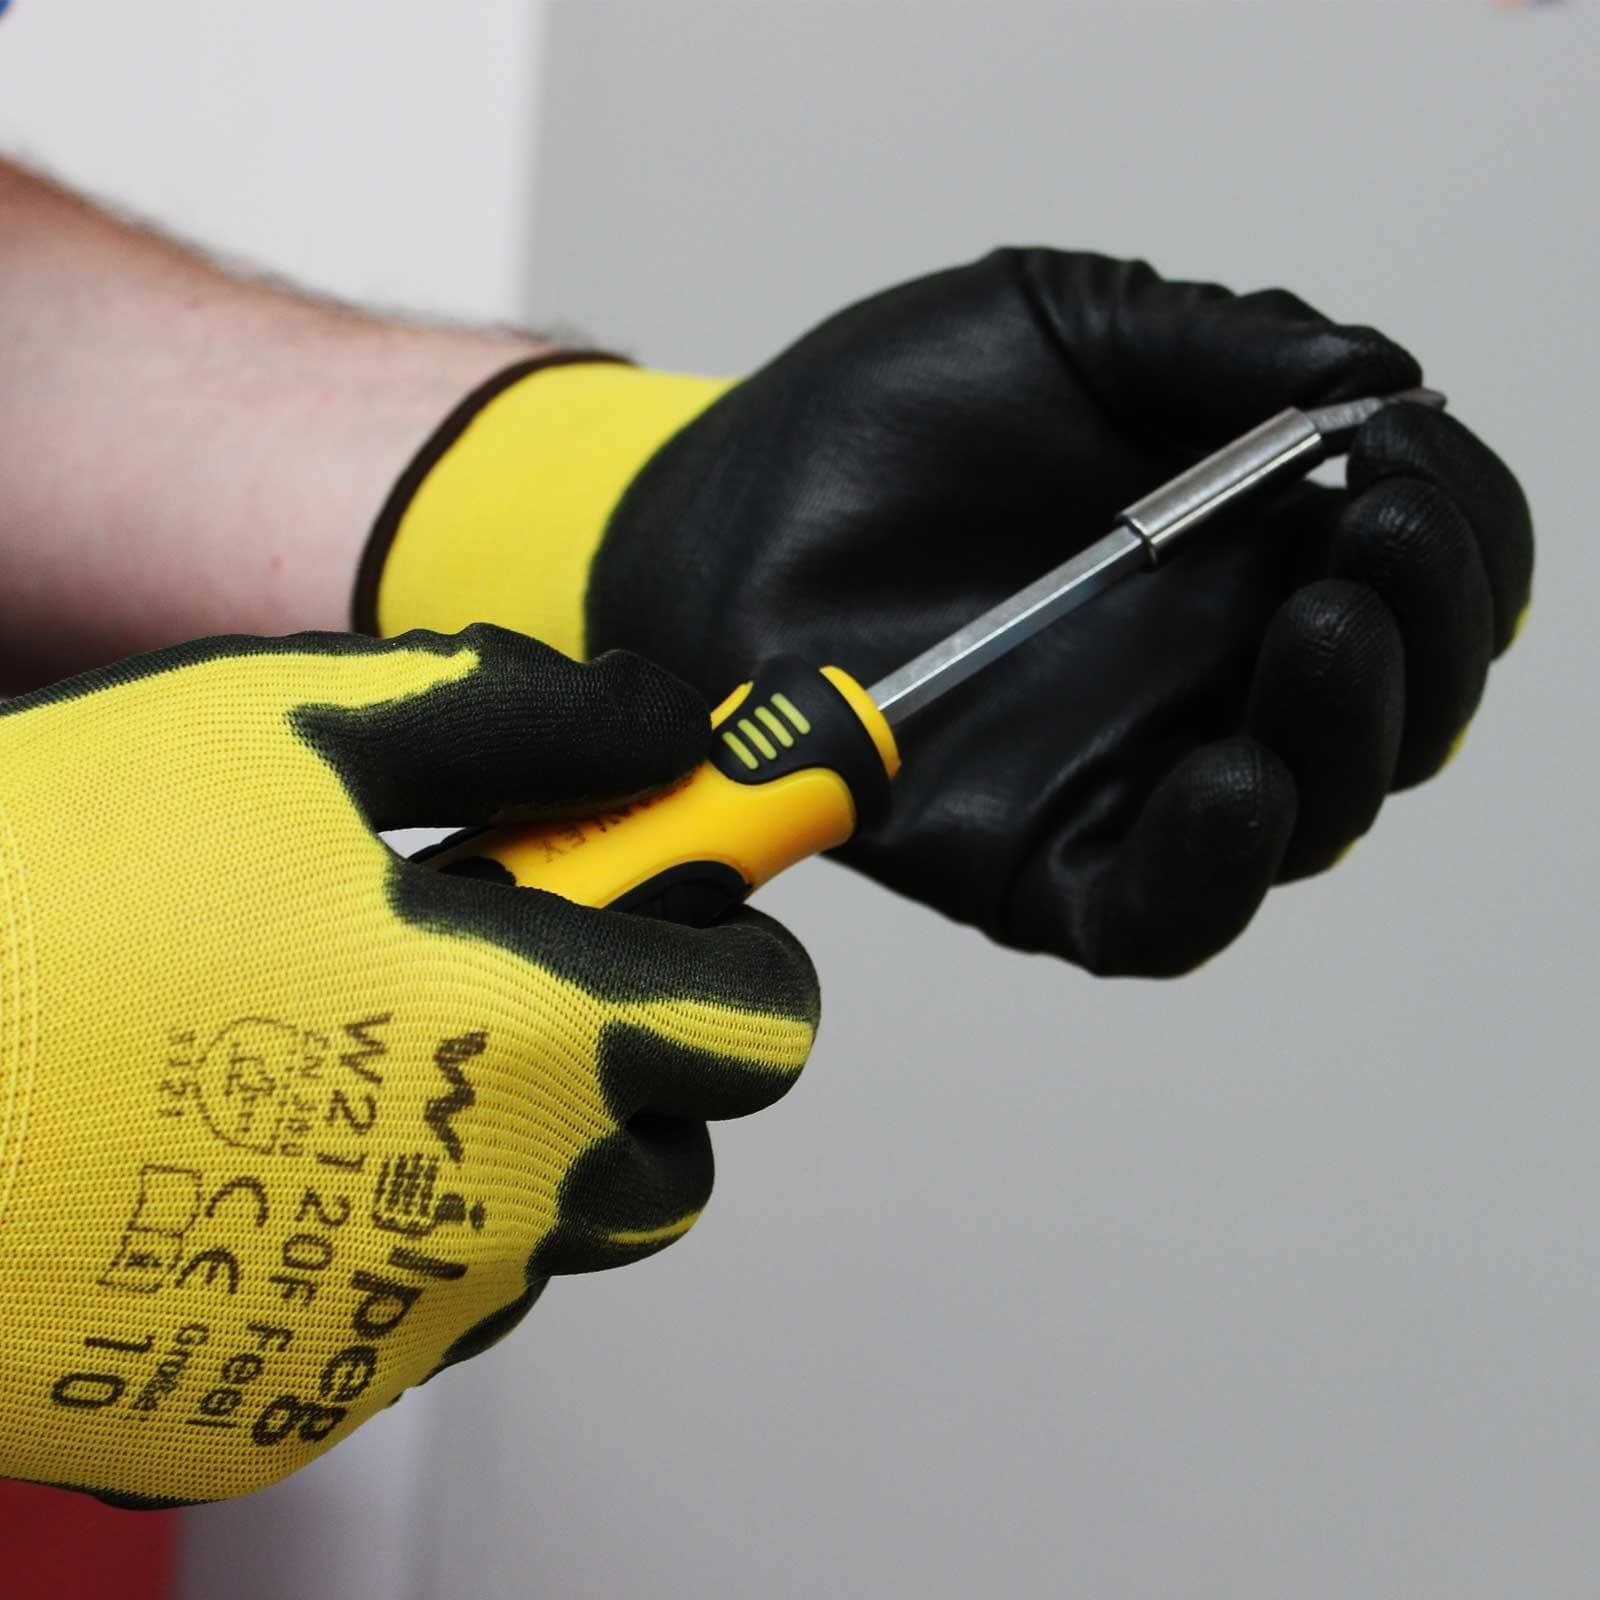 schwarz/gelb Nylon-Strickhandschuhe, W2120F Nitril-Handschuhe PU 12 - Handschuhe WILPEG wilpeg® (Spar-Set) Feel Paar